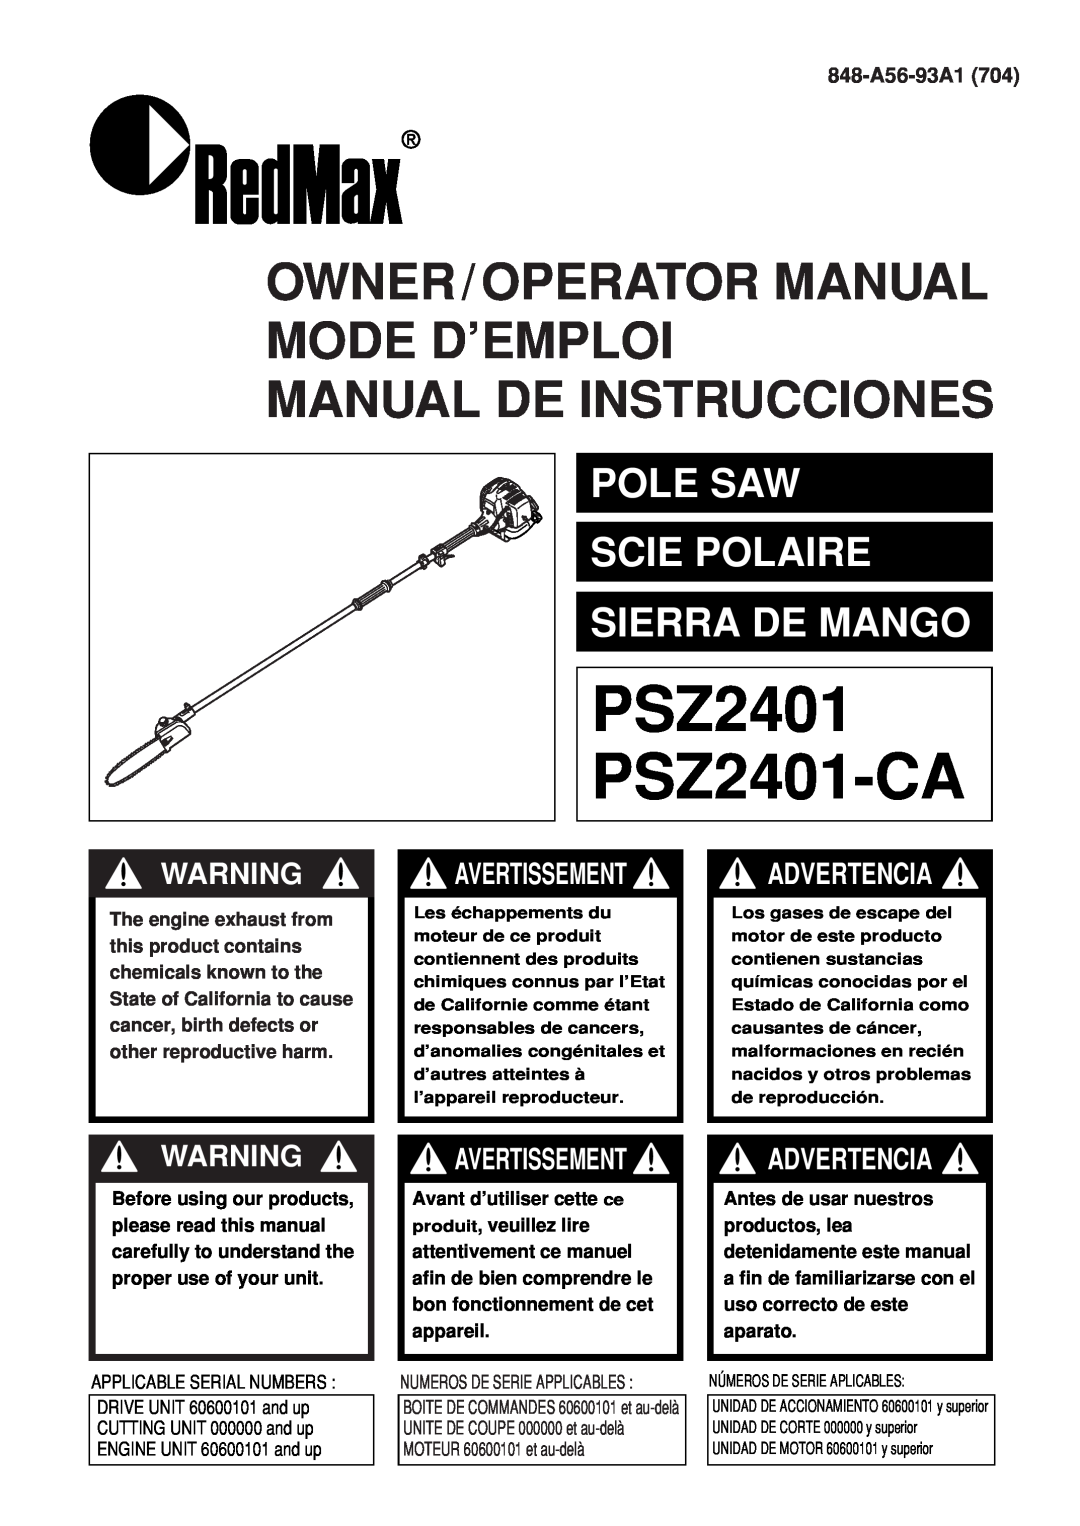 Zenoah PSZ2401, PSZ2401-CA manual PSZ2401 PSZ2401-CA, Owner/Operator Manual Mode D’Emploi, Manual De Instrucciones 